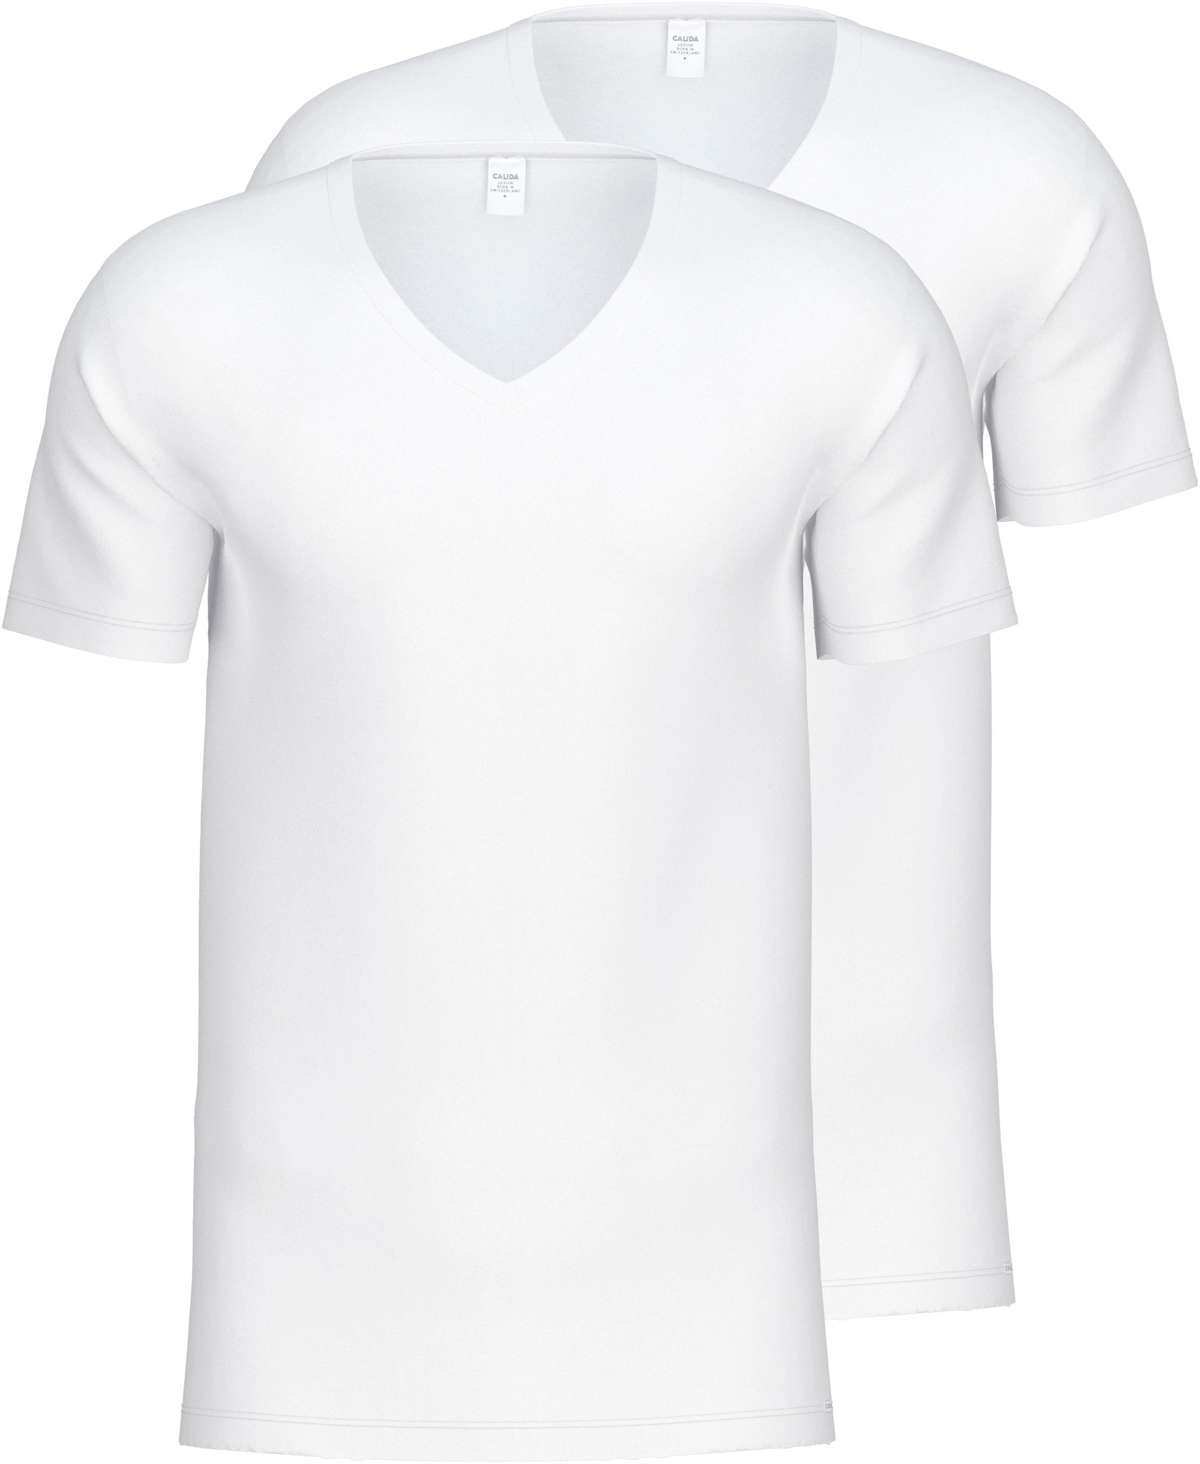 Рубашка с коротким рукавом (2 шт.)